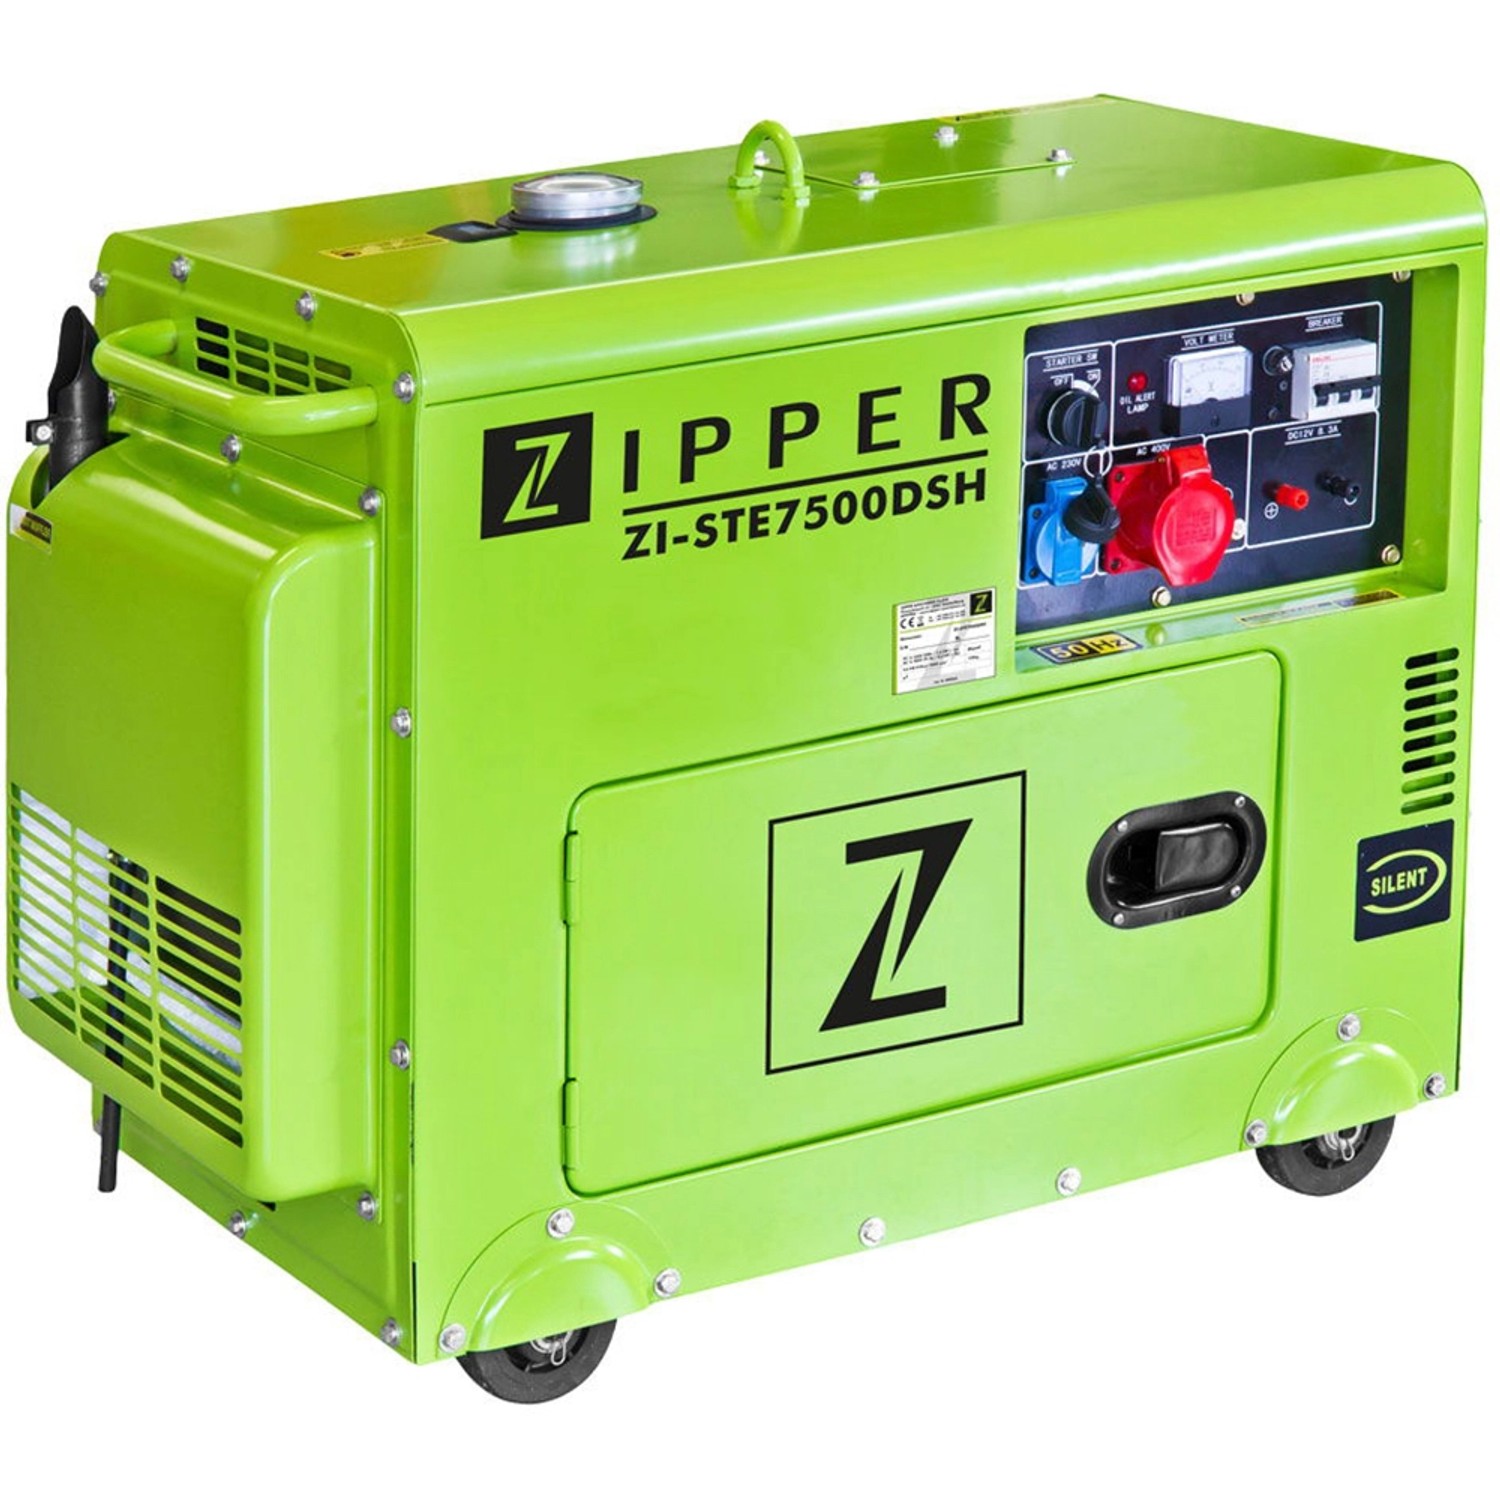 Zipper Diesel-Stromerzeuger ZI-STE7500DSH